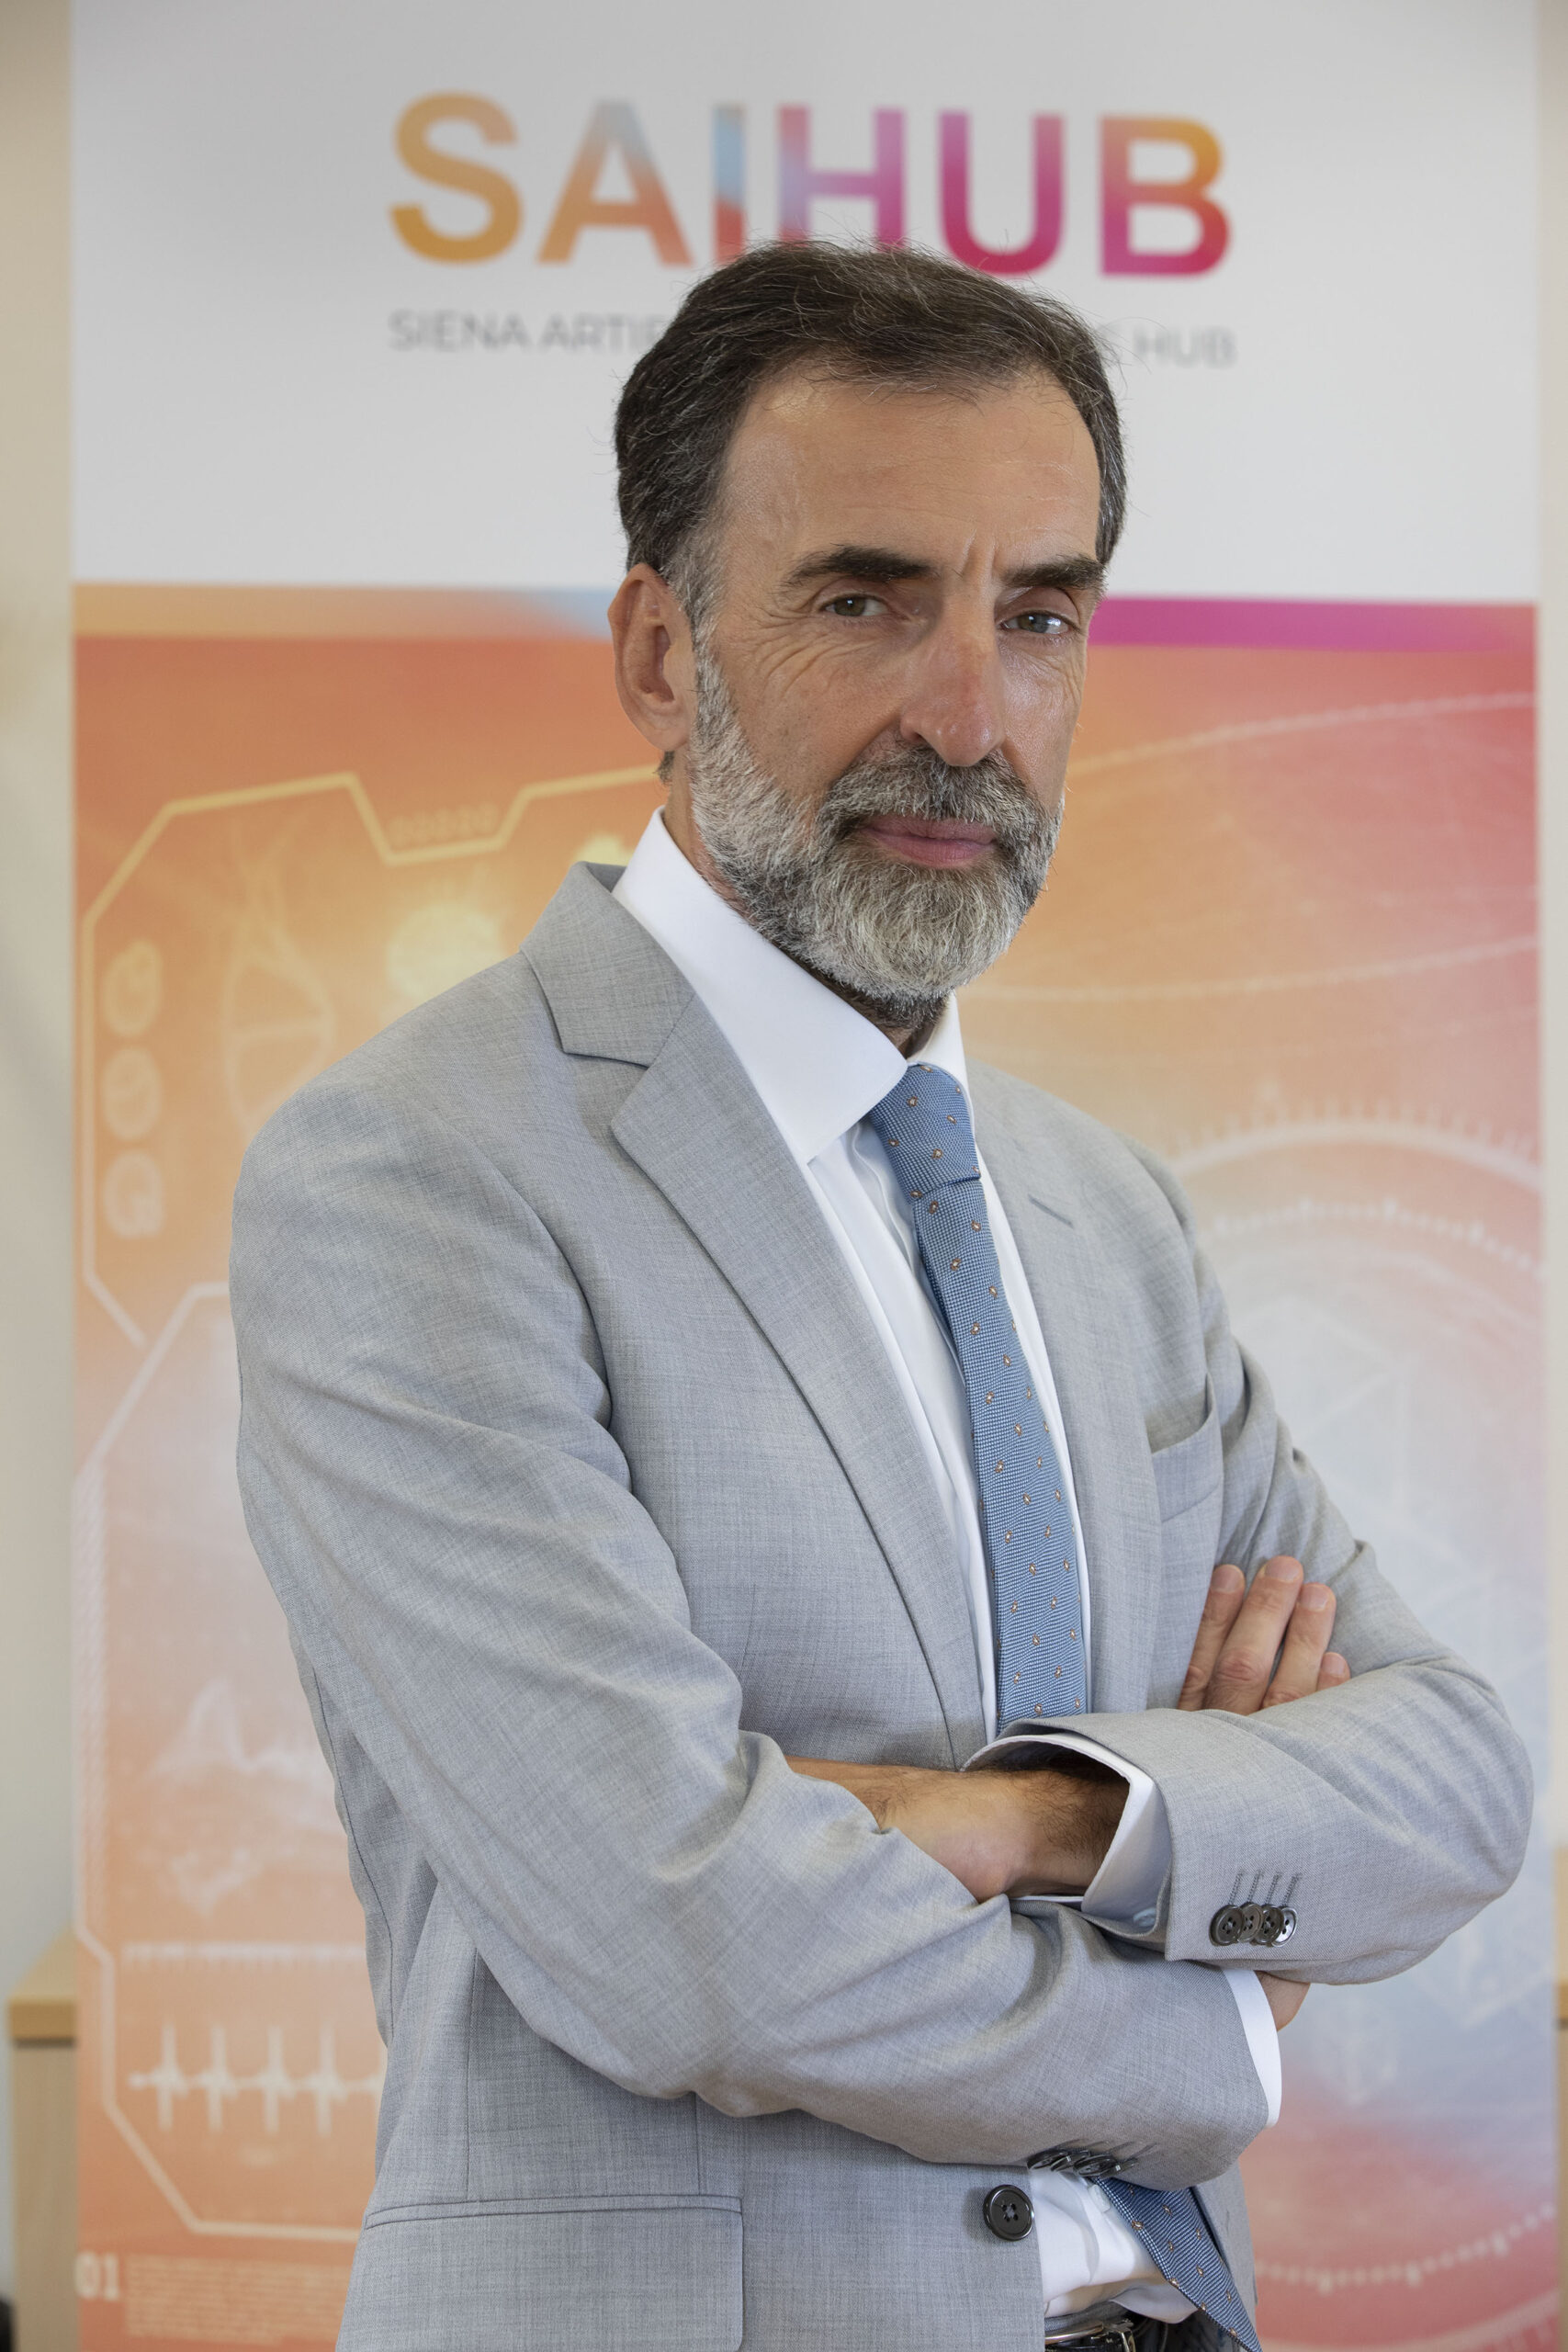 Valter Fraccaro es presidente de SAIHub, acrónimo de Siena Artificial Intelligence Hub, un centro de importancia mundial en el campo de las ciencias de la vida.